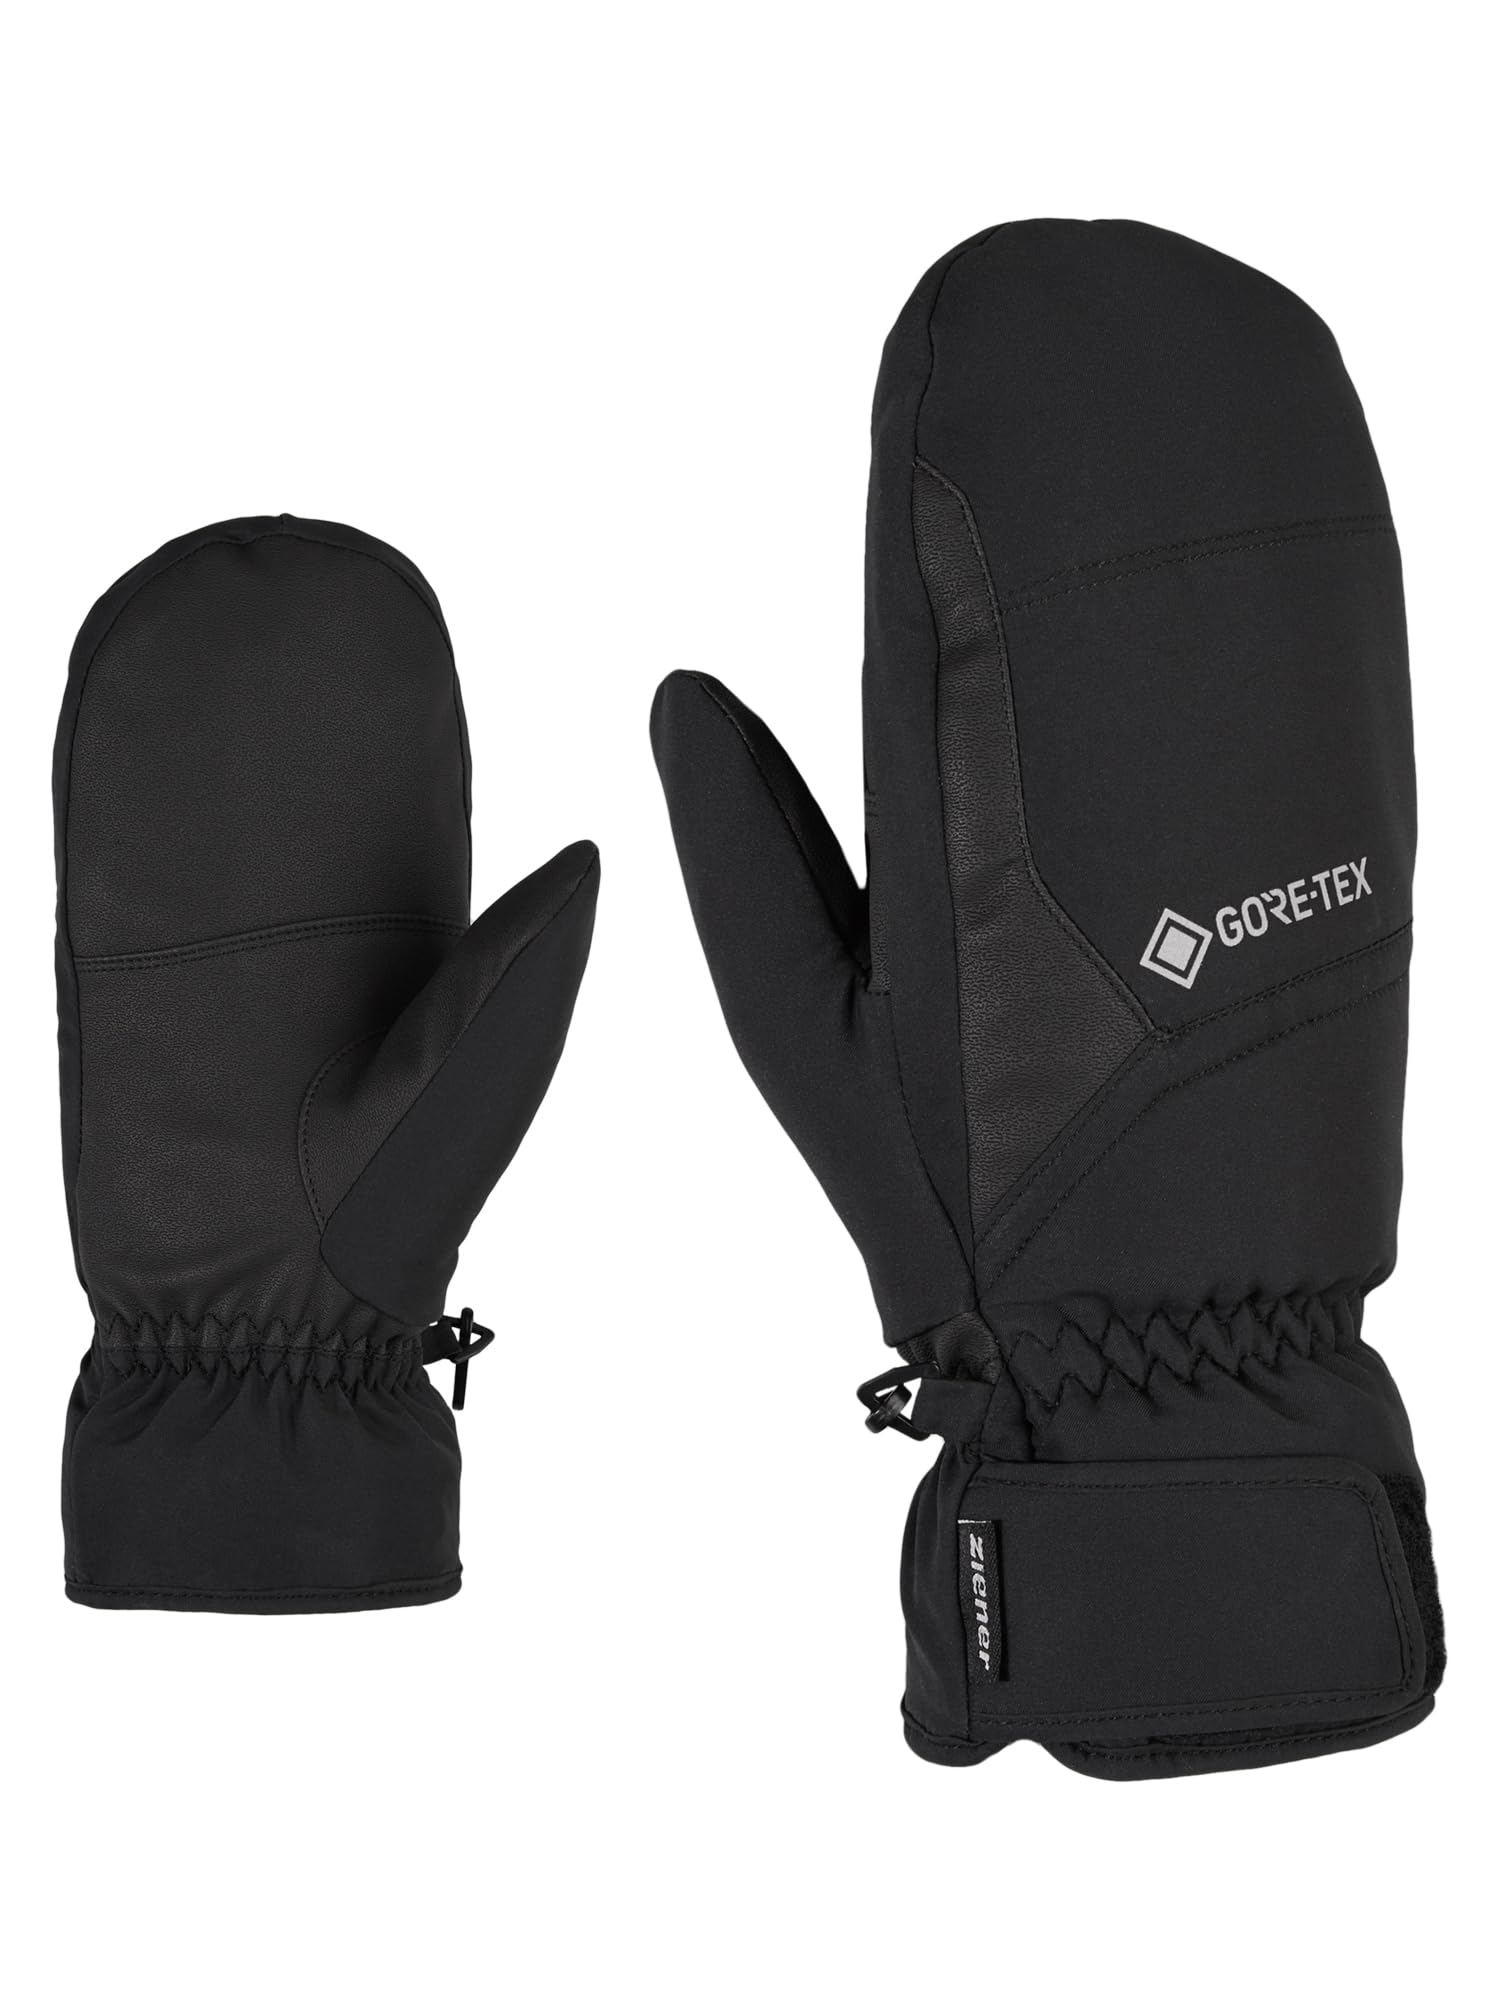 Ziener Garwel GTX Mitten Glove Alpine Ski-Handschuhe/Wintersport | Wasserdicht, Atmungsaktiv, Black, 10.5